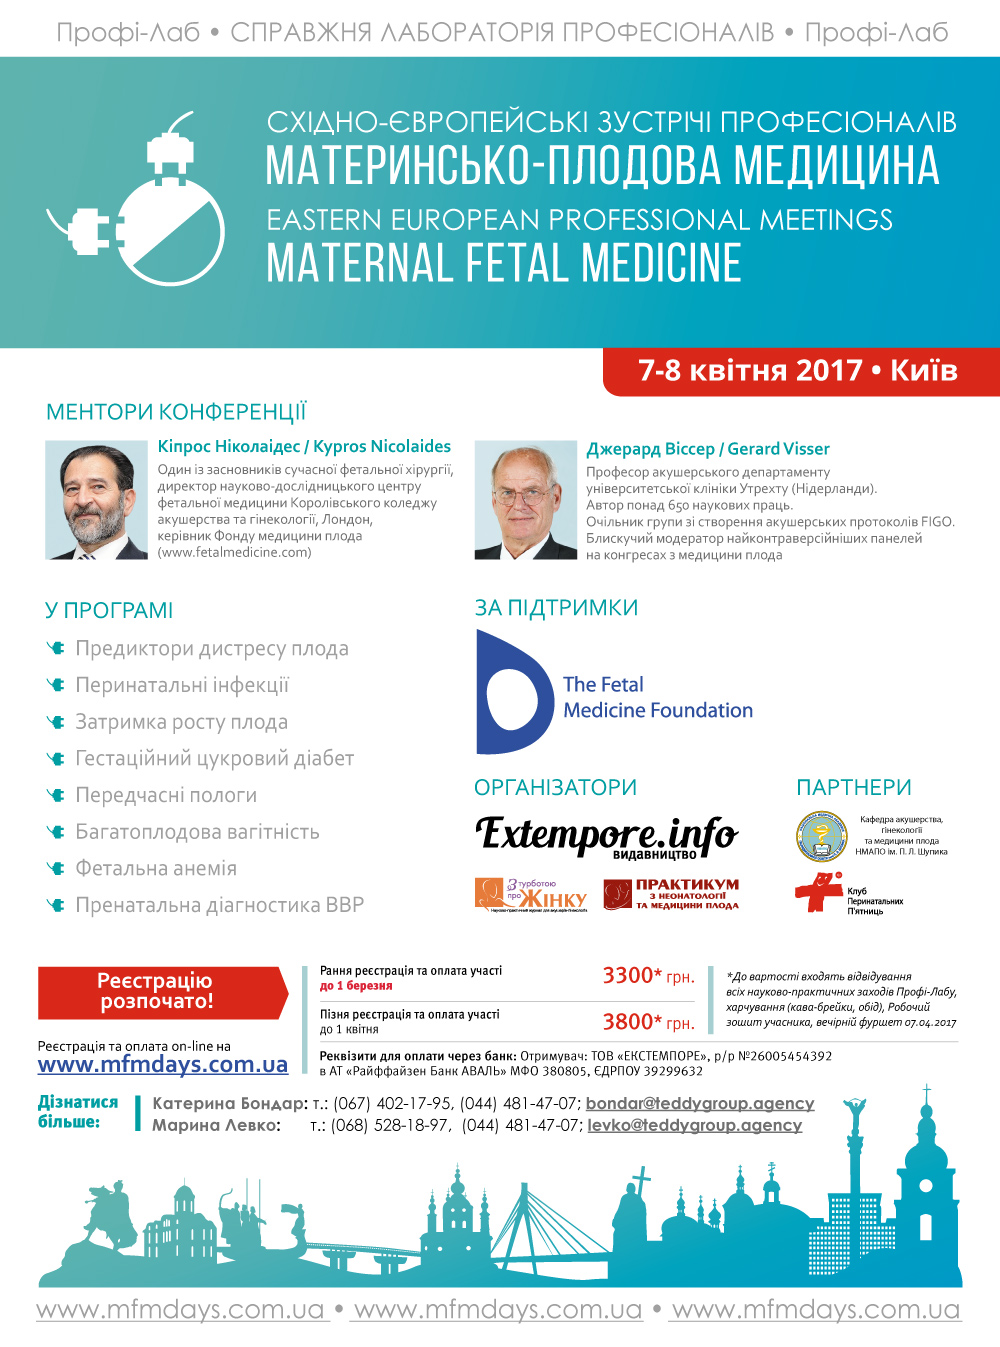 Науково-практична конференція «Східноєвропейські зустрічі професіоналів: материнсько-плодова медицина»